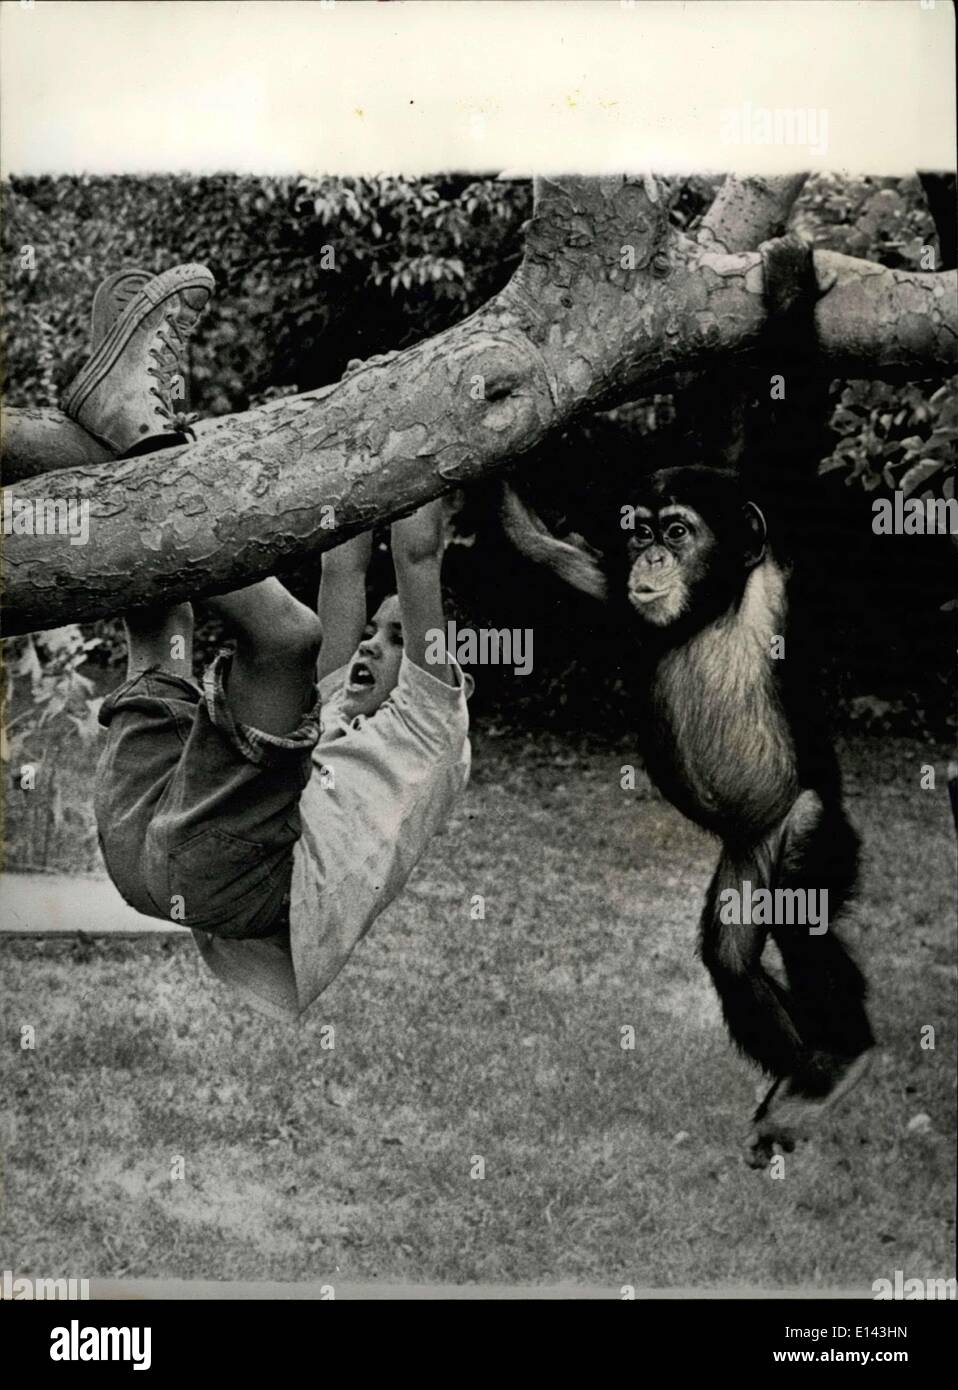 31. März 2012 - jetzt ist es die "Amerikanisierung '' von Susie.: diese seltene und berührende Studie zeigt die zärtliche Beziehung geteilt durch zwei einfache, lebhaften Herzen einen jungen und seinen geliebten Schimpansen-Freund. Getrennt durch Tausende von Meilen von seiner natürlichen Heimat und Familie in Sierra Leone, '' der Schimpanse vor kurzem '' nach Amerika ausgewandert. Während seiner Tätigkeit im Ausland von Peace Corps Worker Merrick Lockwood verabschiedet wurden, wird der Schimpanse namens Susie bereits berichtet, freundete sich mit Hälfte der Stadt in New England und die Herzen aller Kinder in der Nachbarschaft gestohlen haben Stockfoto